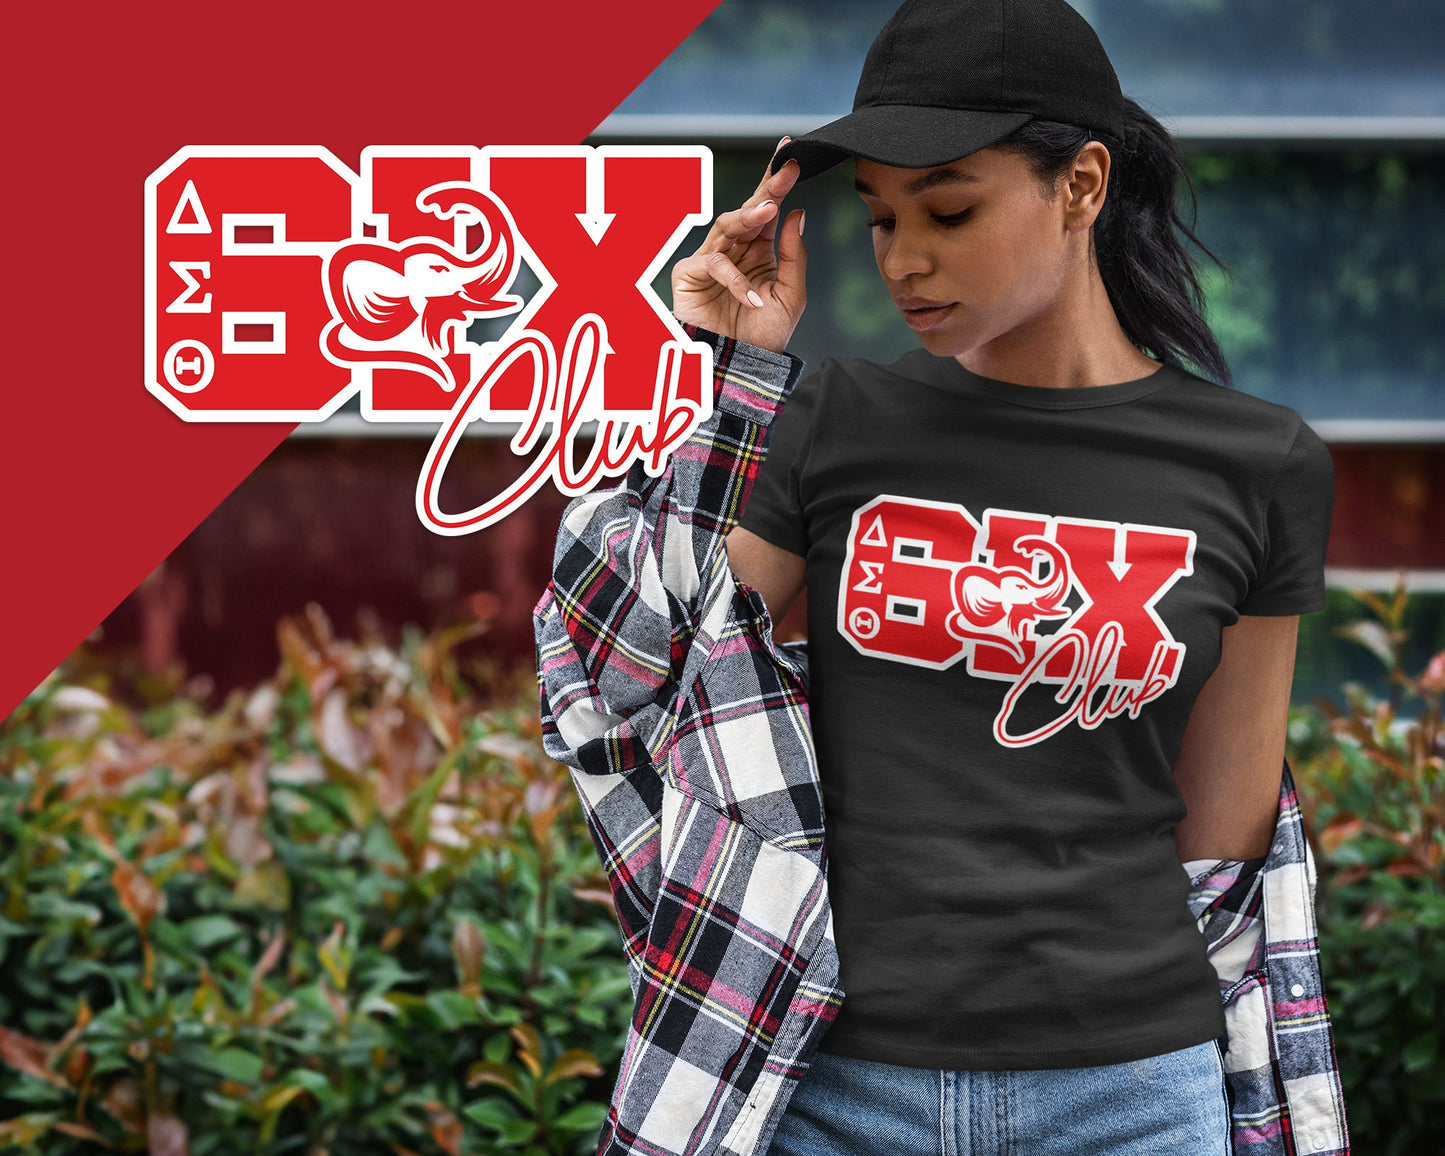 Delta Sigma Theta 6ix Club Unisex T-Shirt